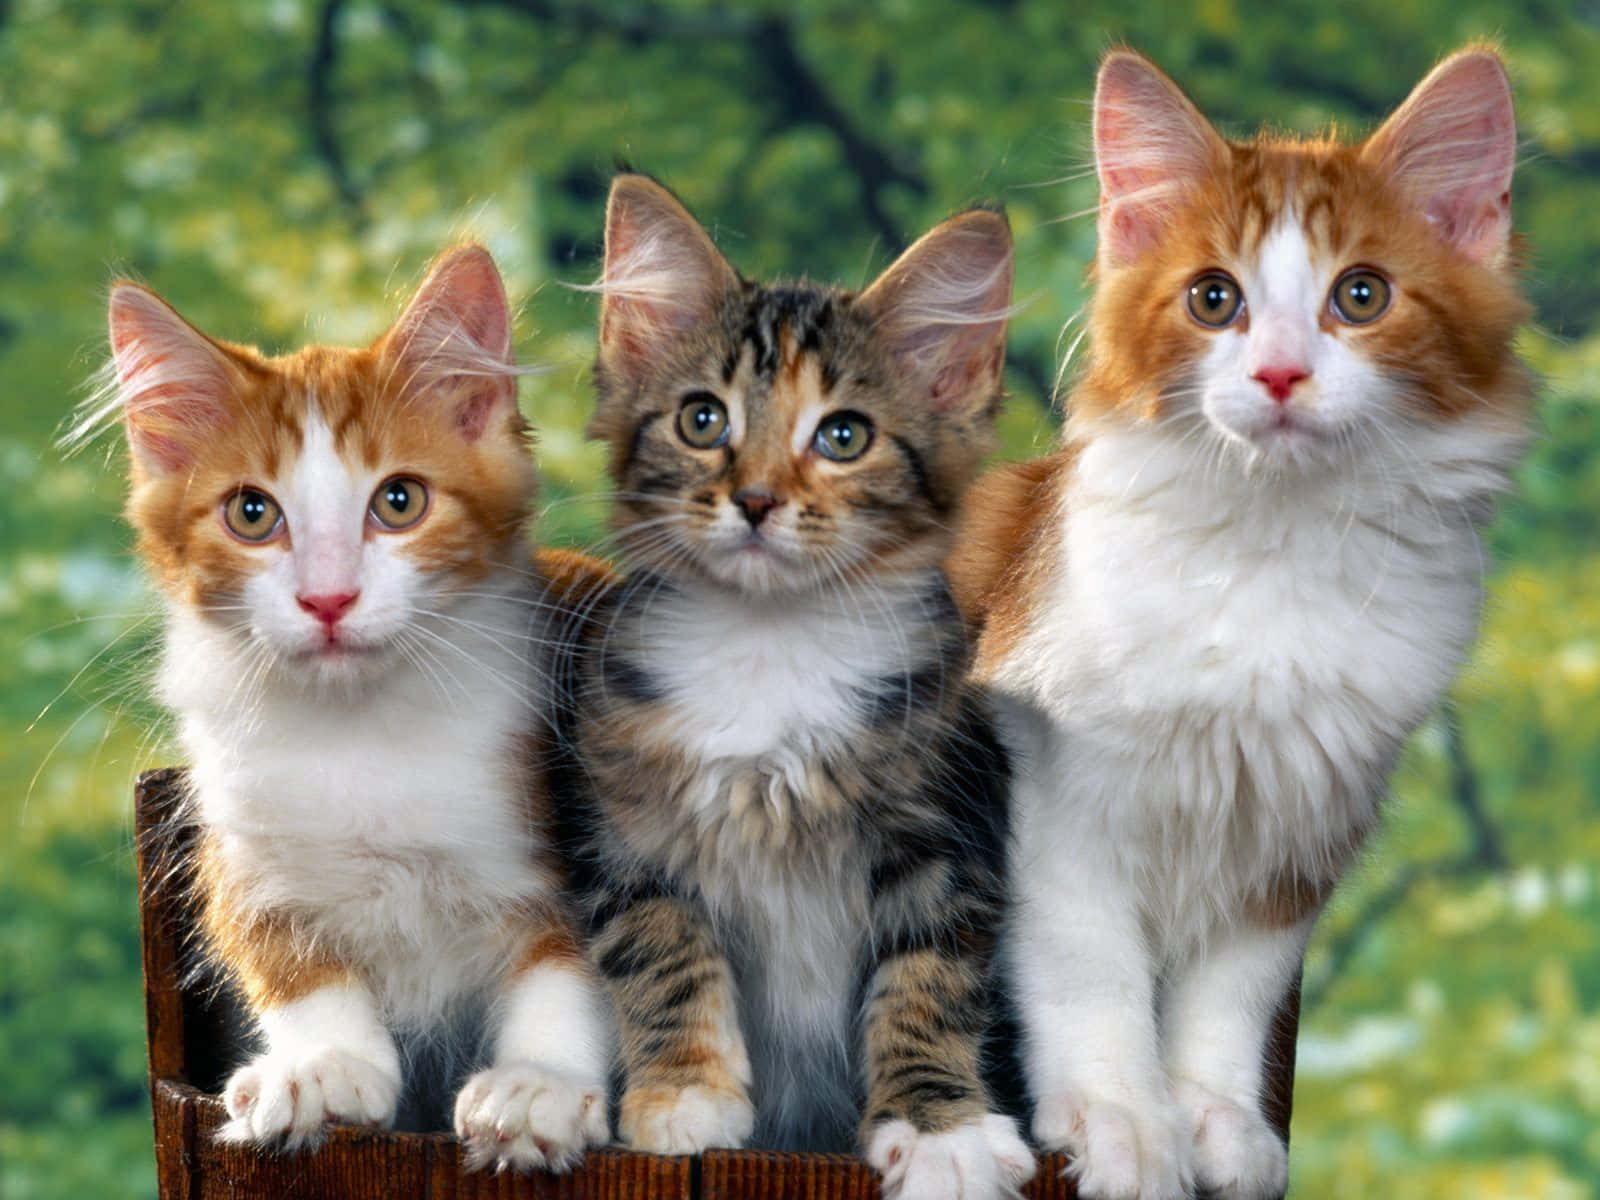 Imagende Tres Gatos Adorables De Cabeza Marrón Y Negra